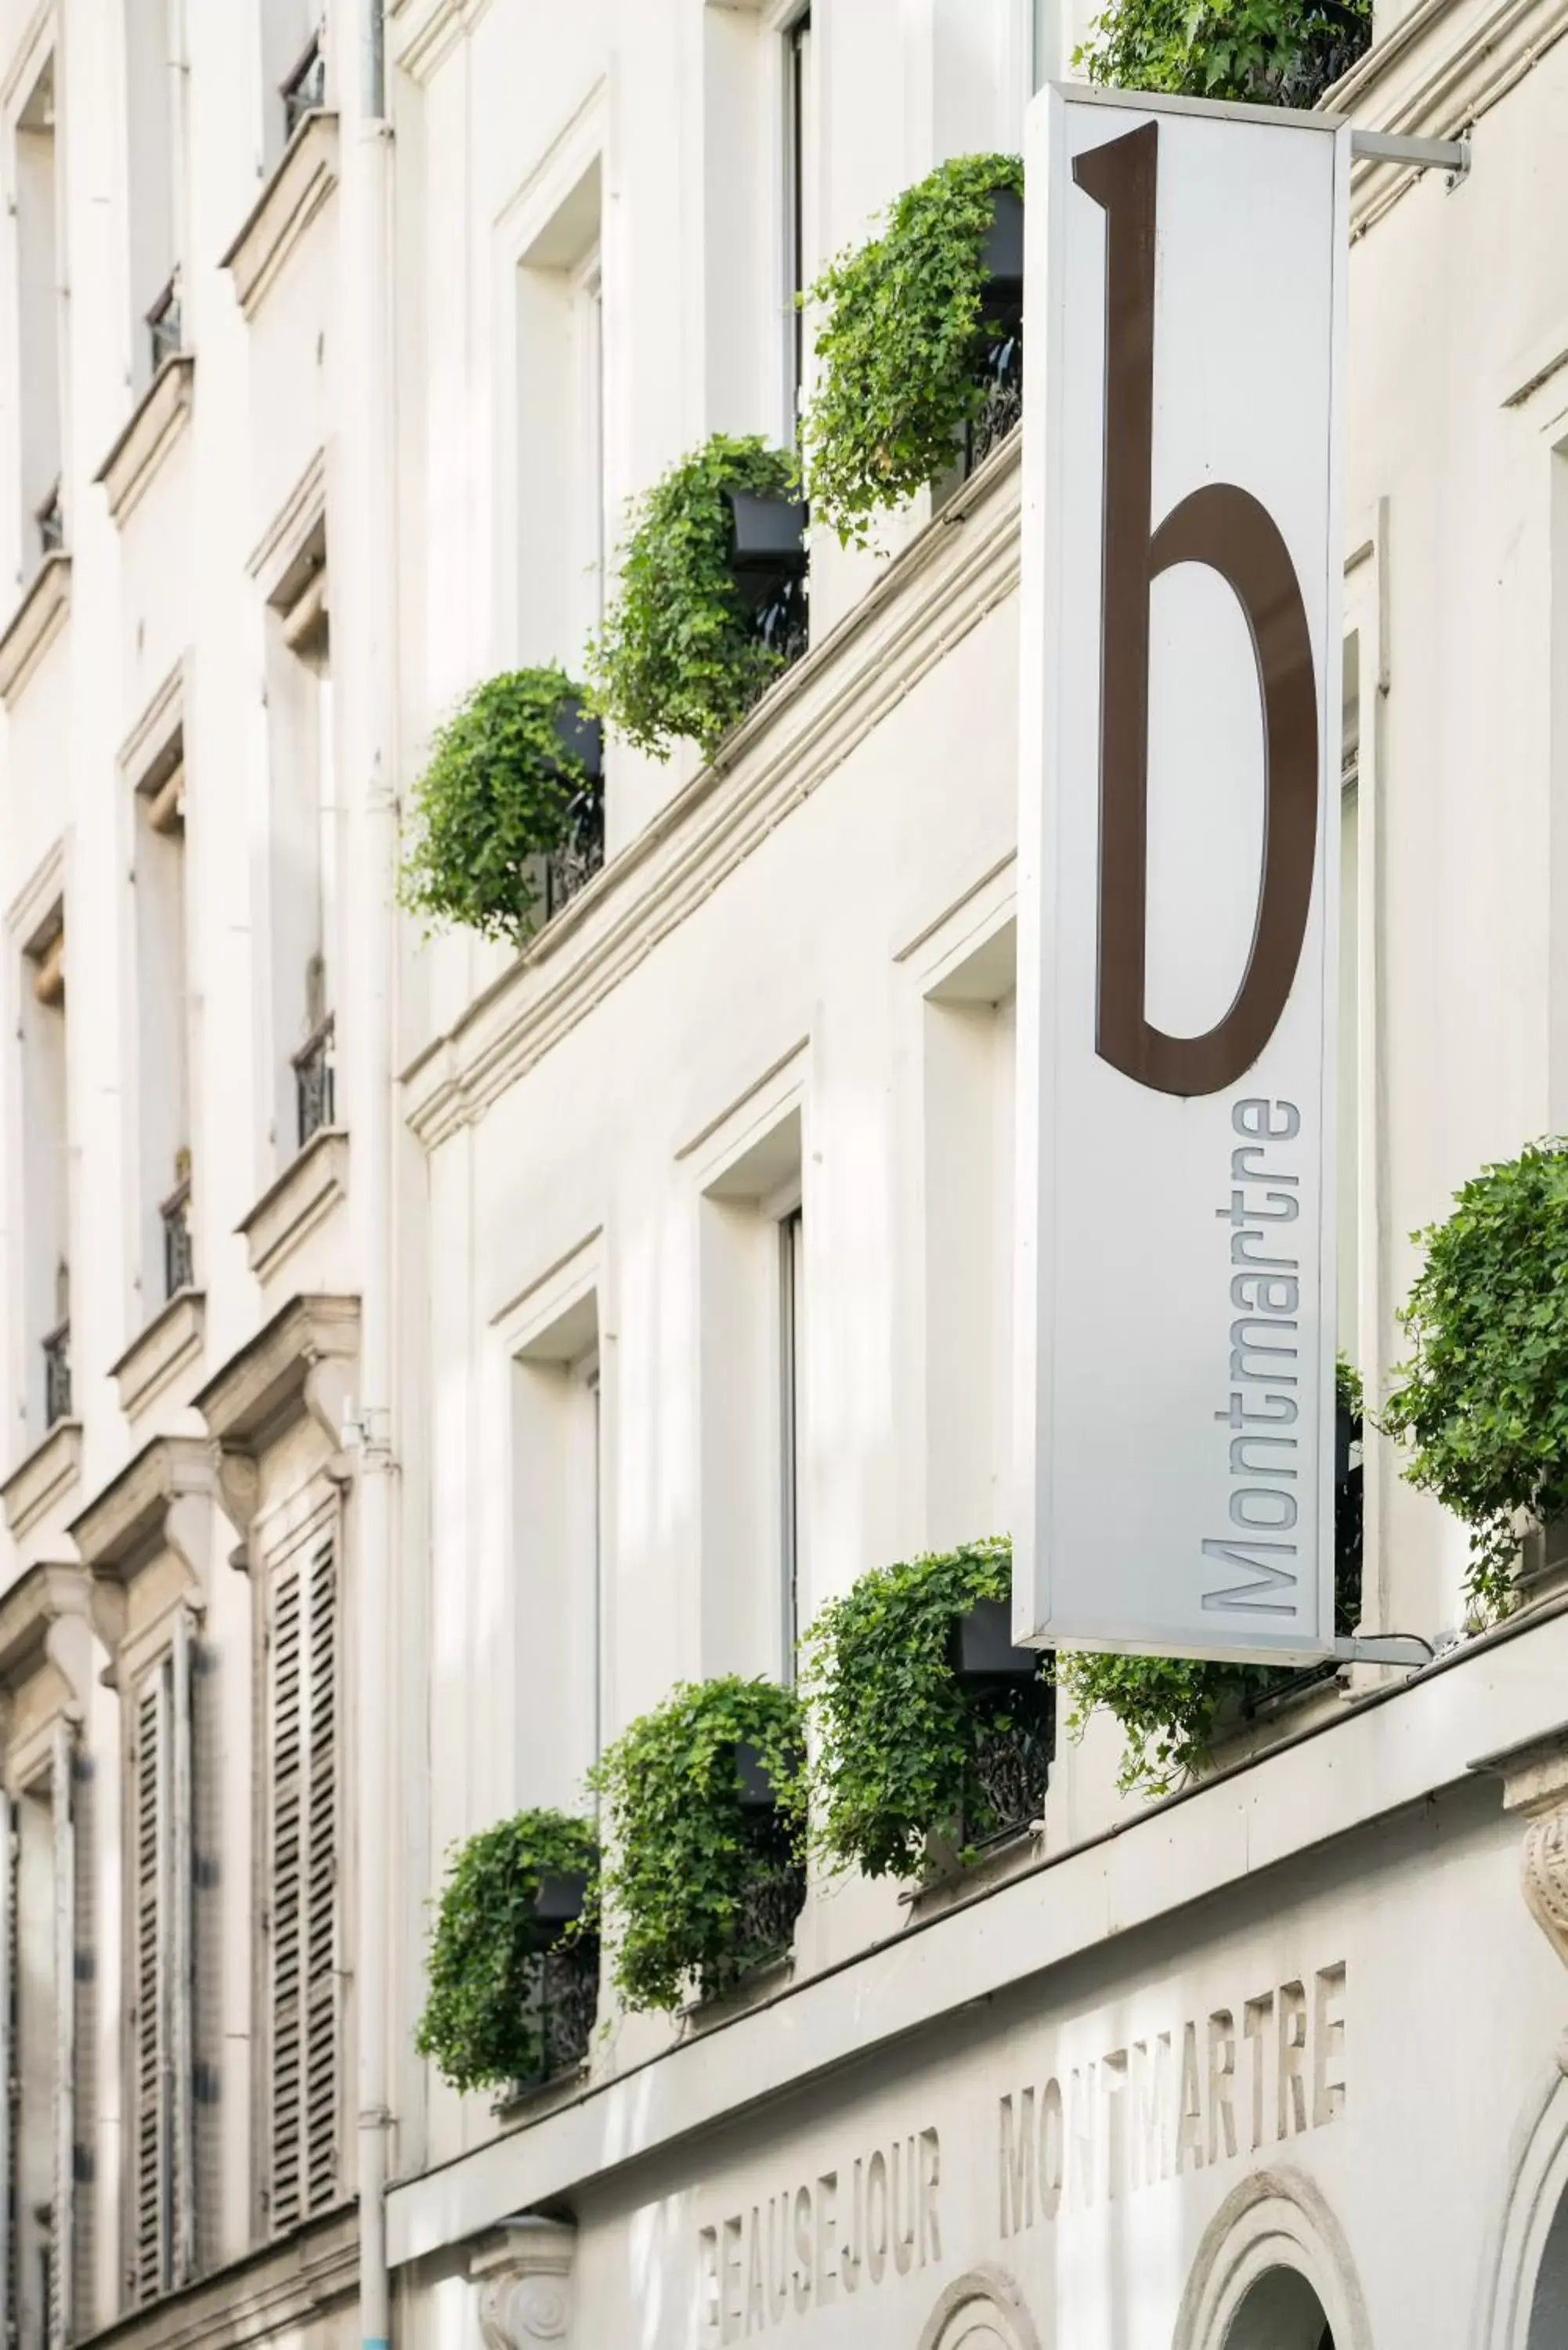 Property building in B Montmartre